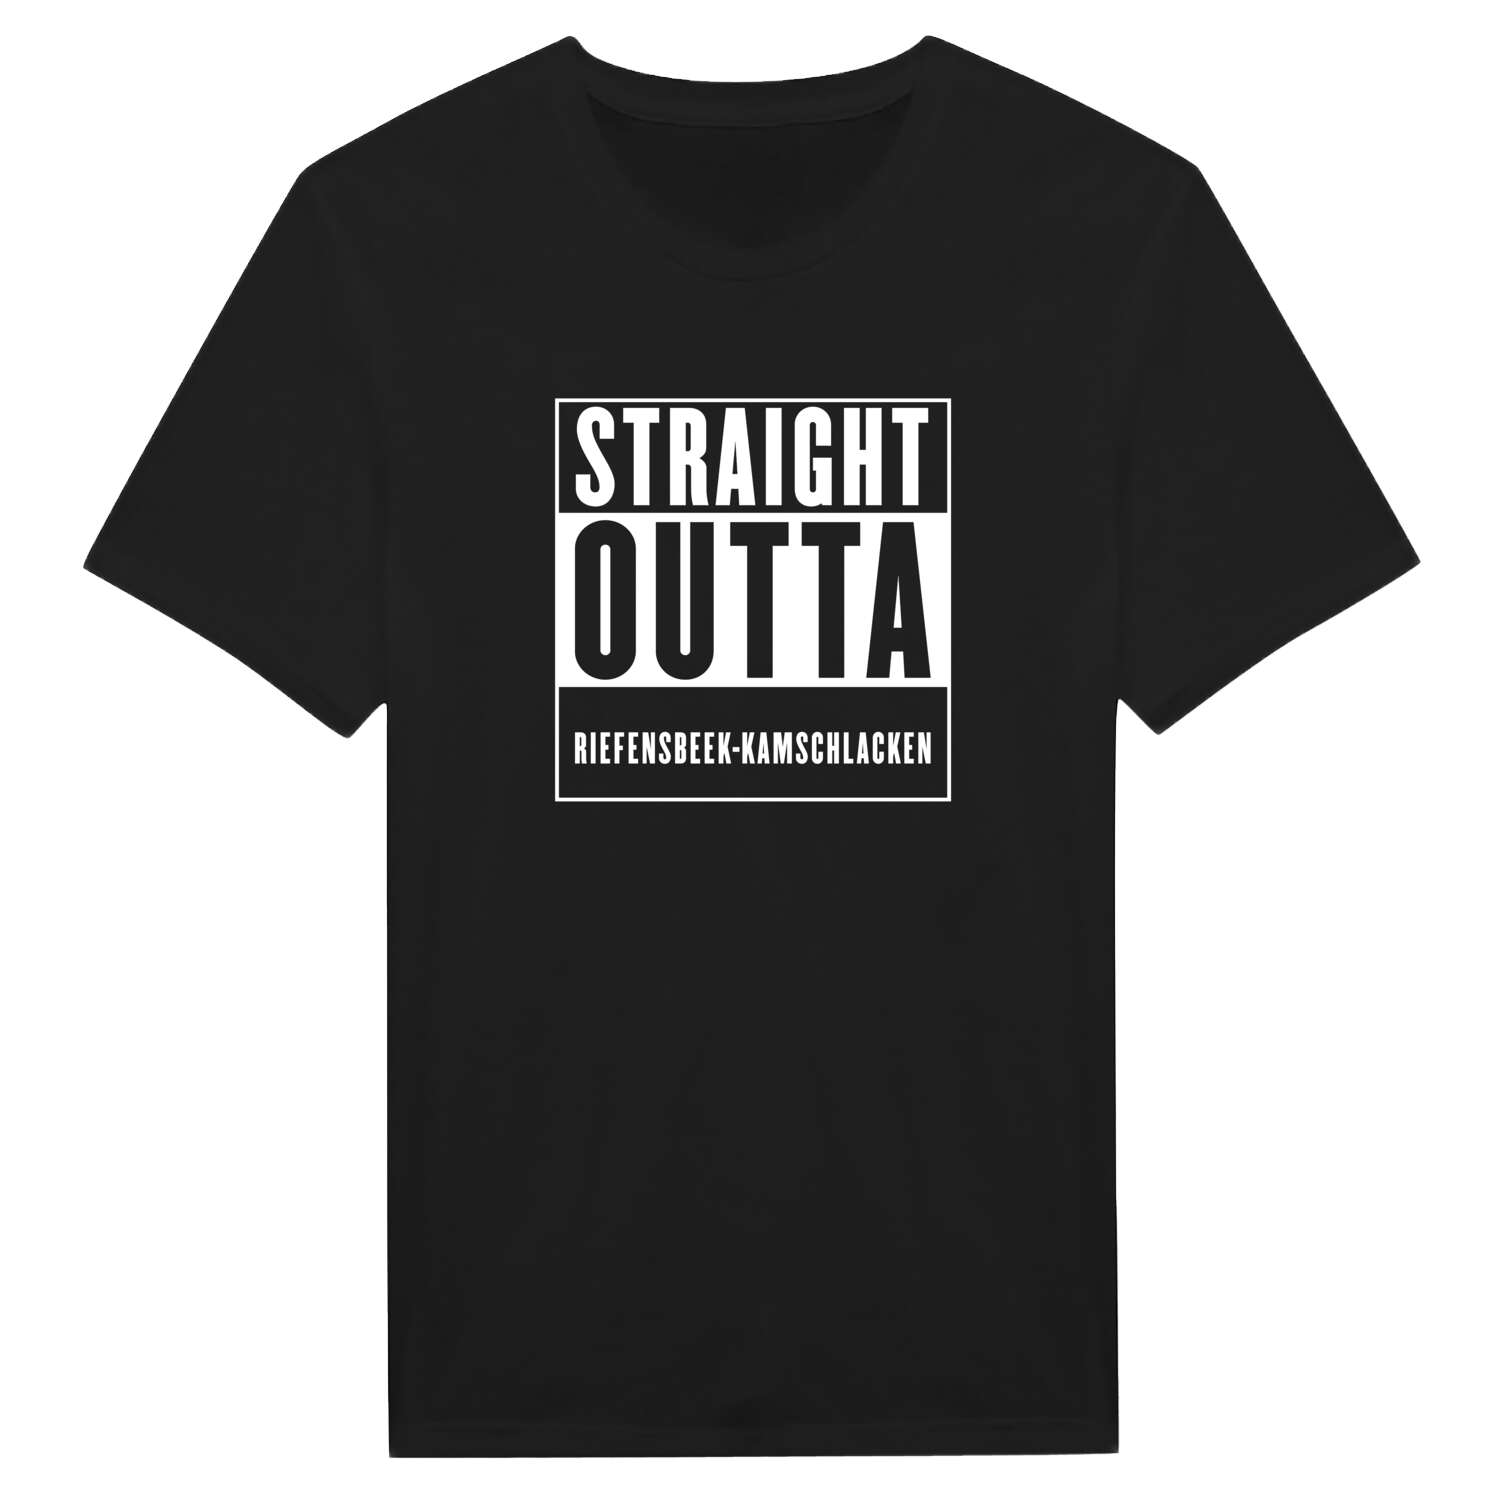 Riefensbeek-Kamschlacken T-Shirt »Straight Outta«